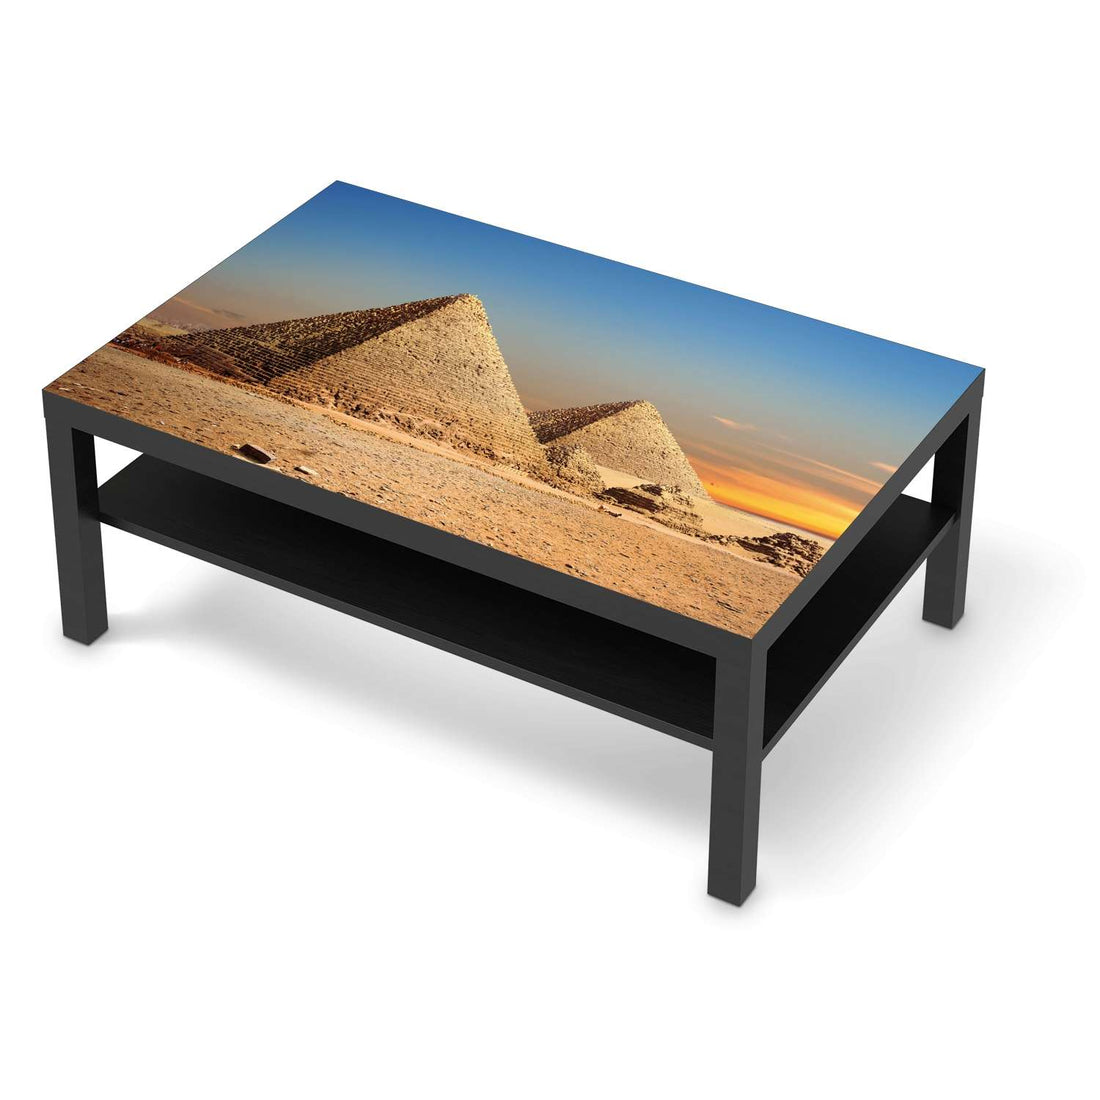 Klebefolie Pyramids - IKEA Lack Tisch 118x78 cm - schwarz